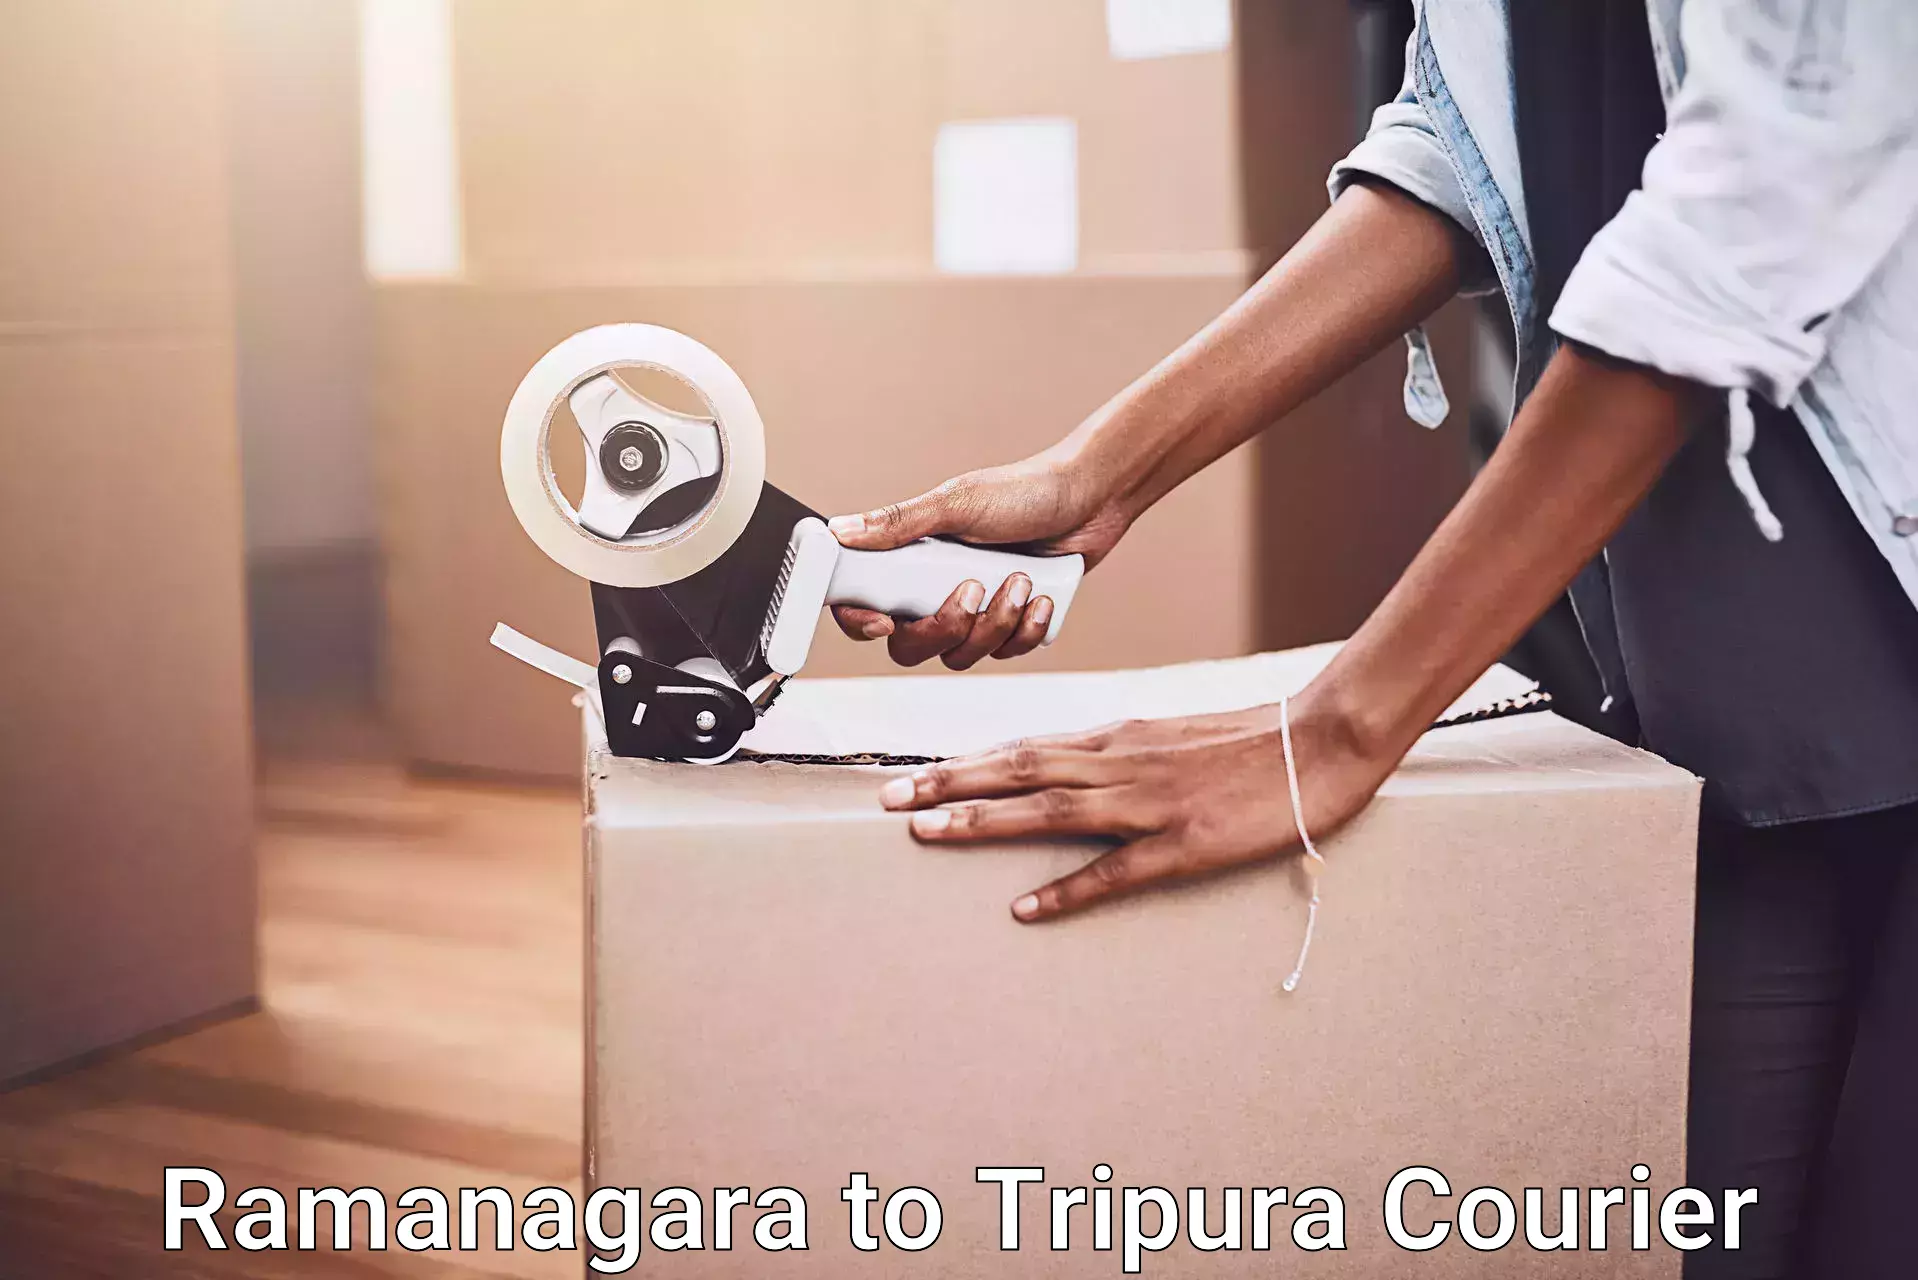 Professional moving assistance Ramanagara to IIIT Agartala